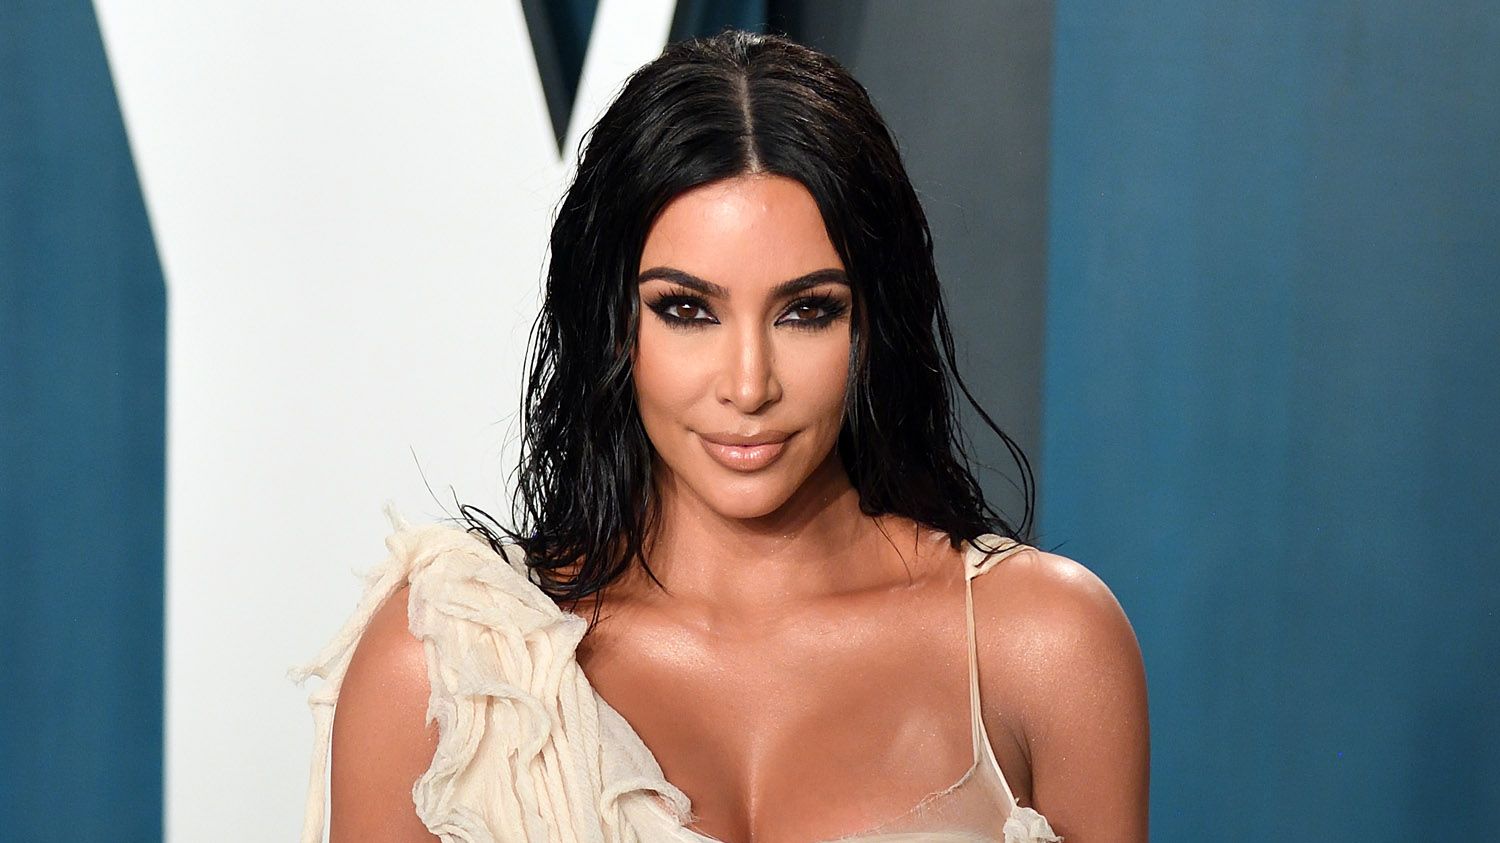 How much is Kim Kardashian worth?